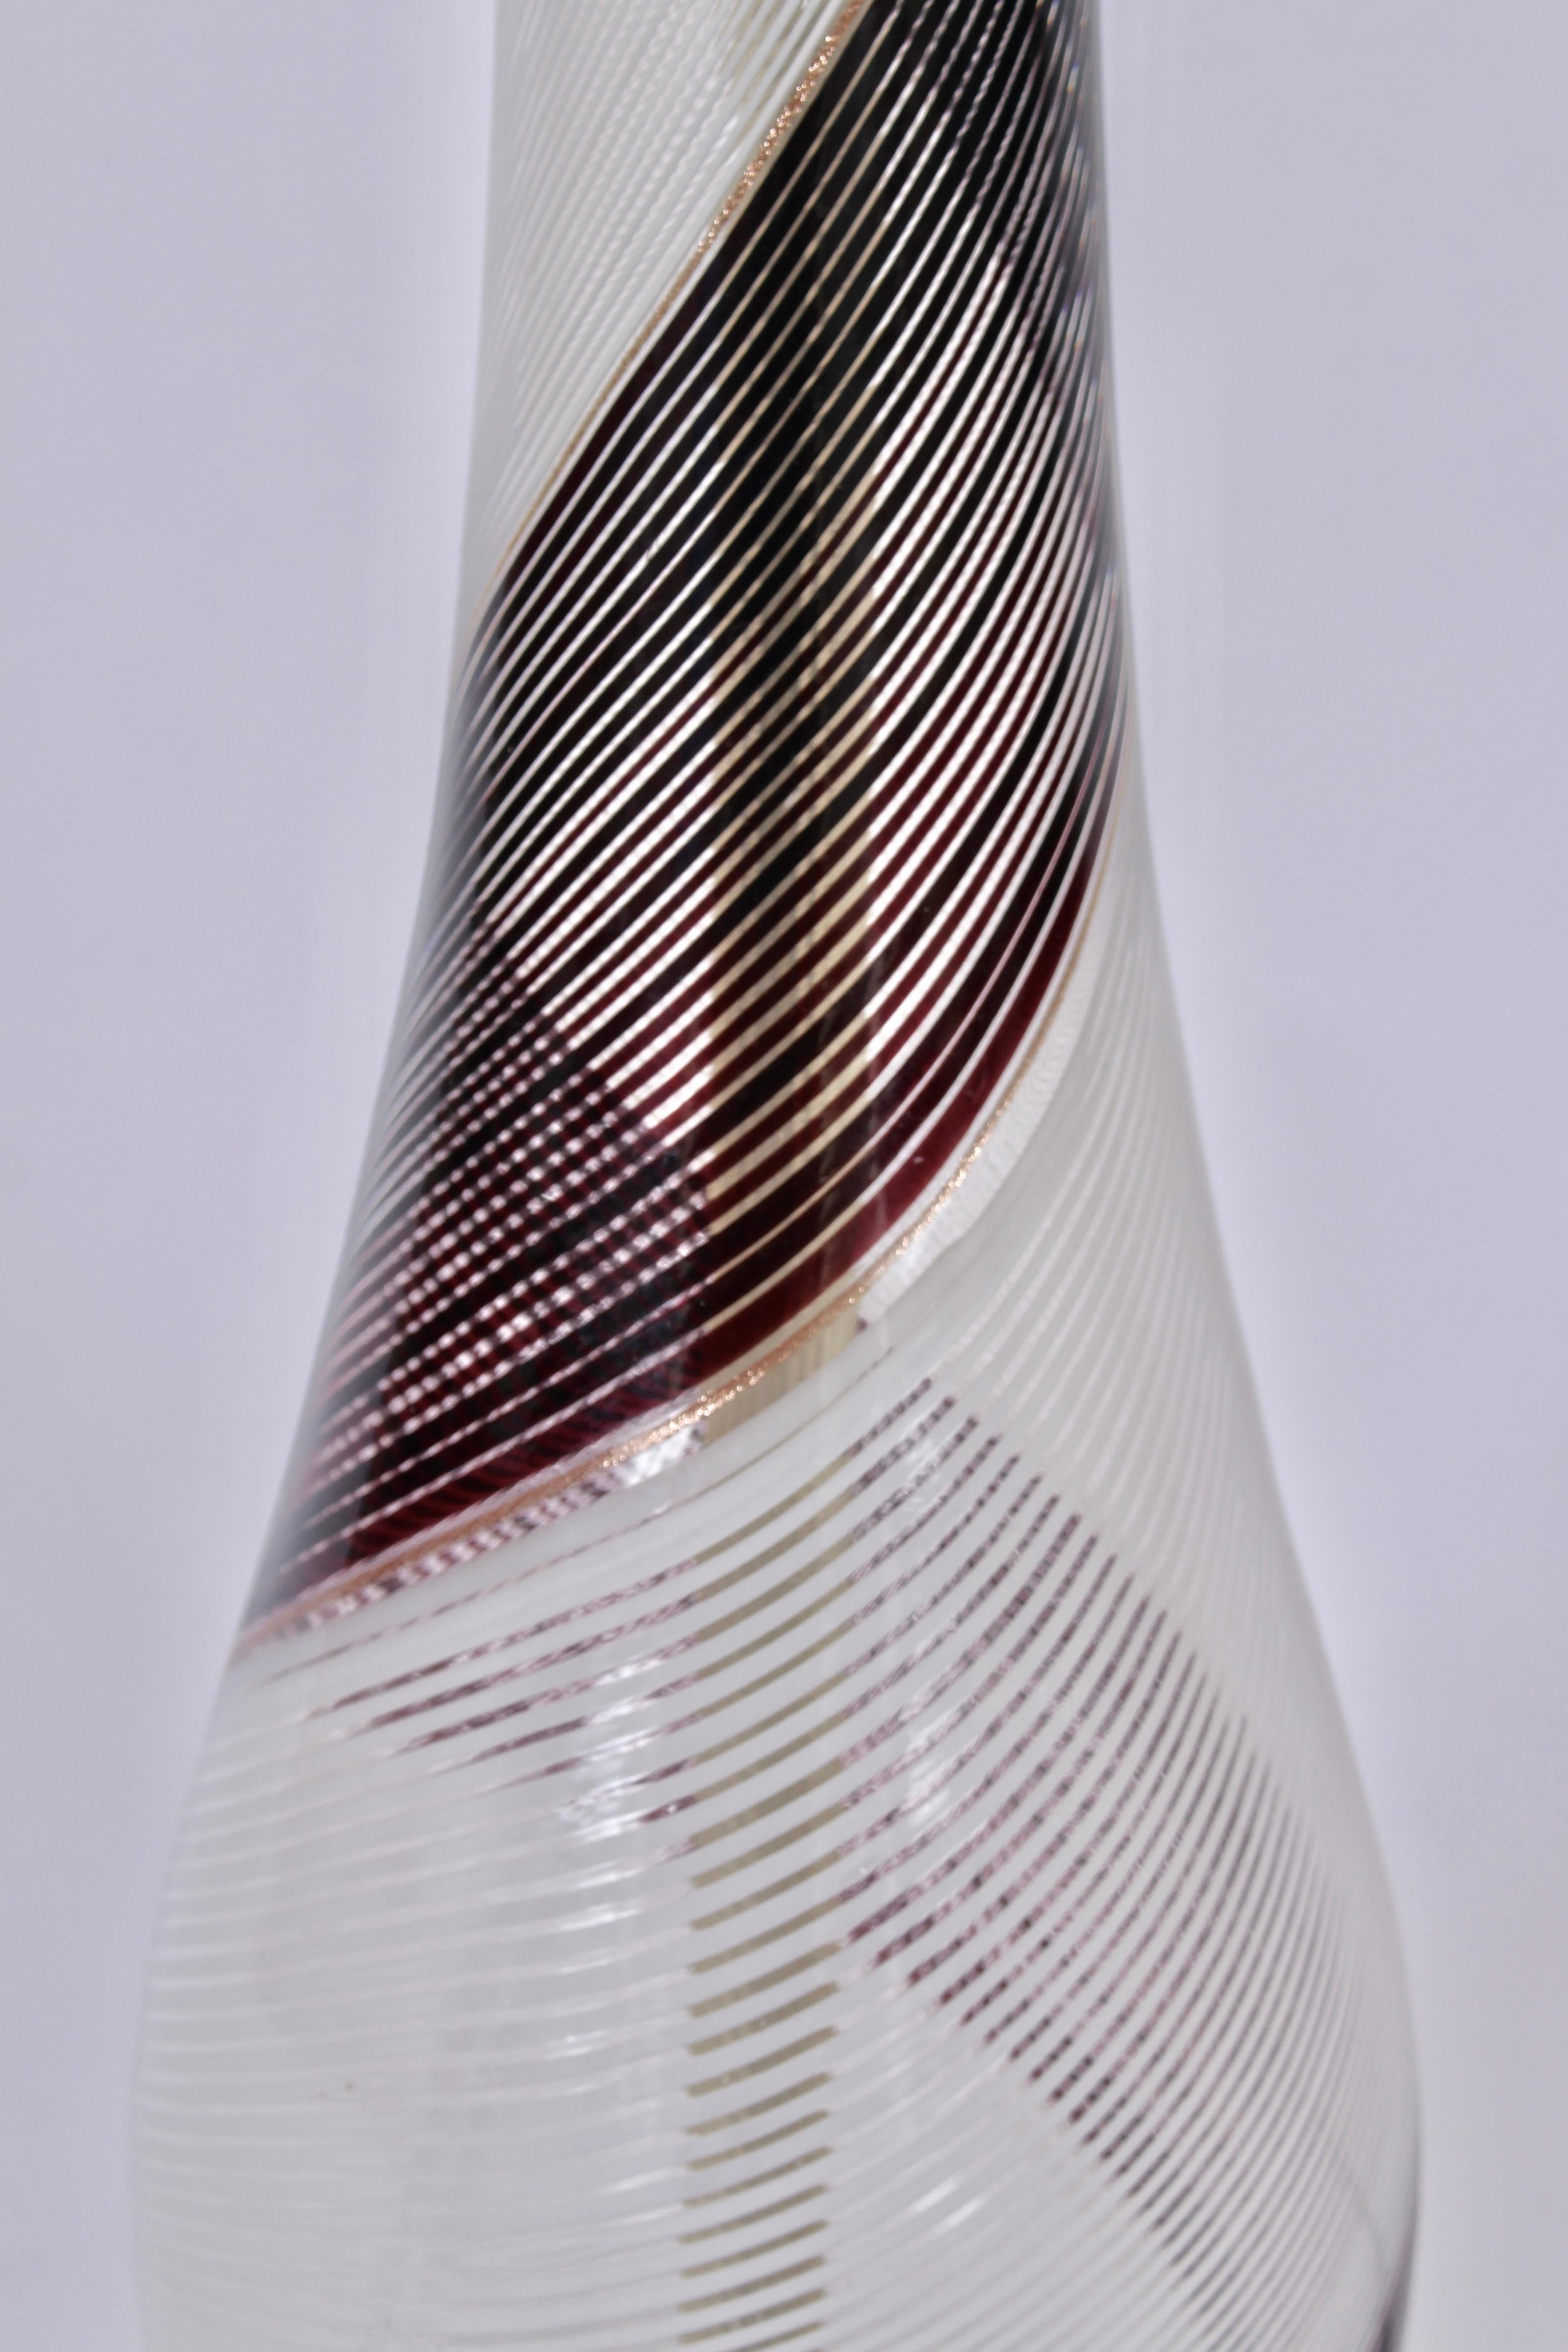 Mid-20th Century Dino Martens Mezza Filigrana Murano Glass Table Lamp in Black, White & Copper  For Sale